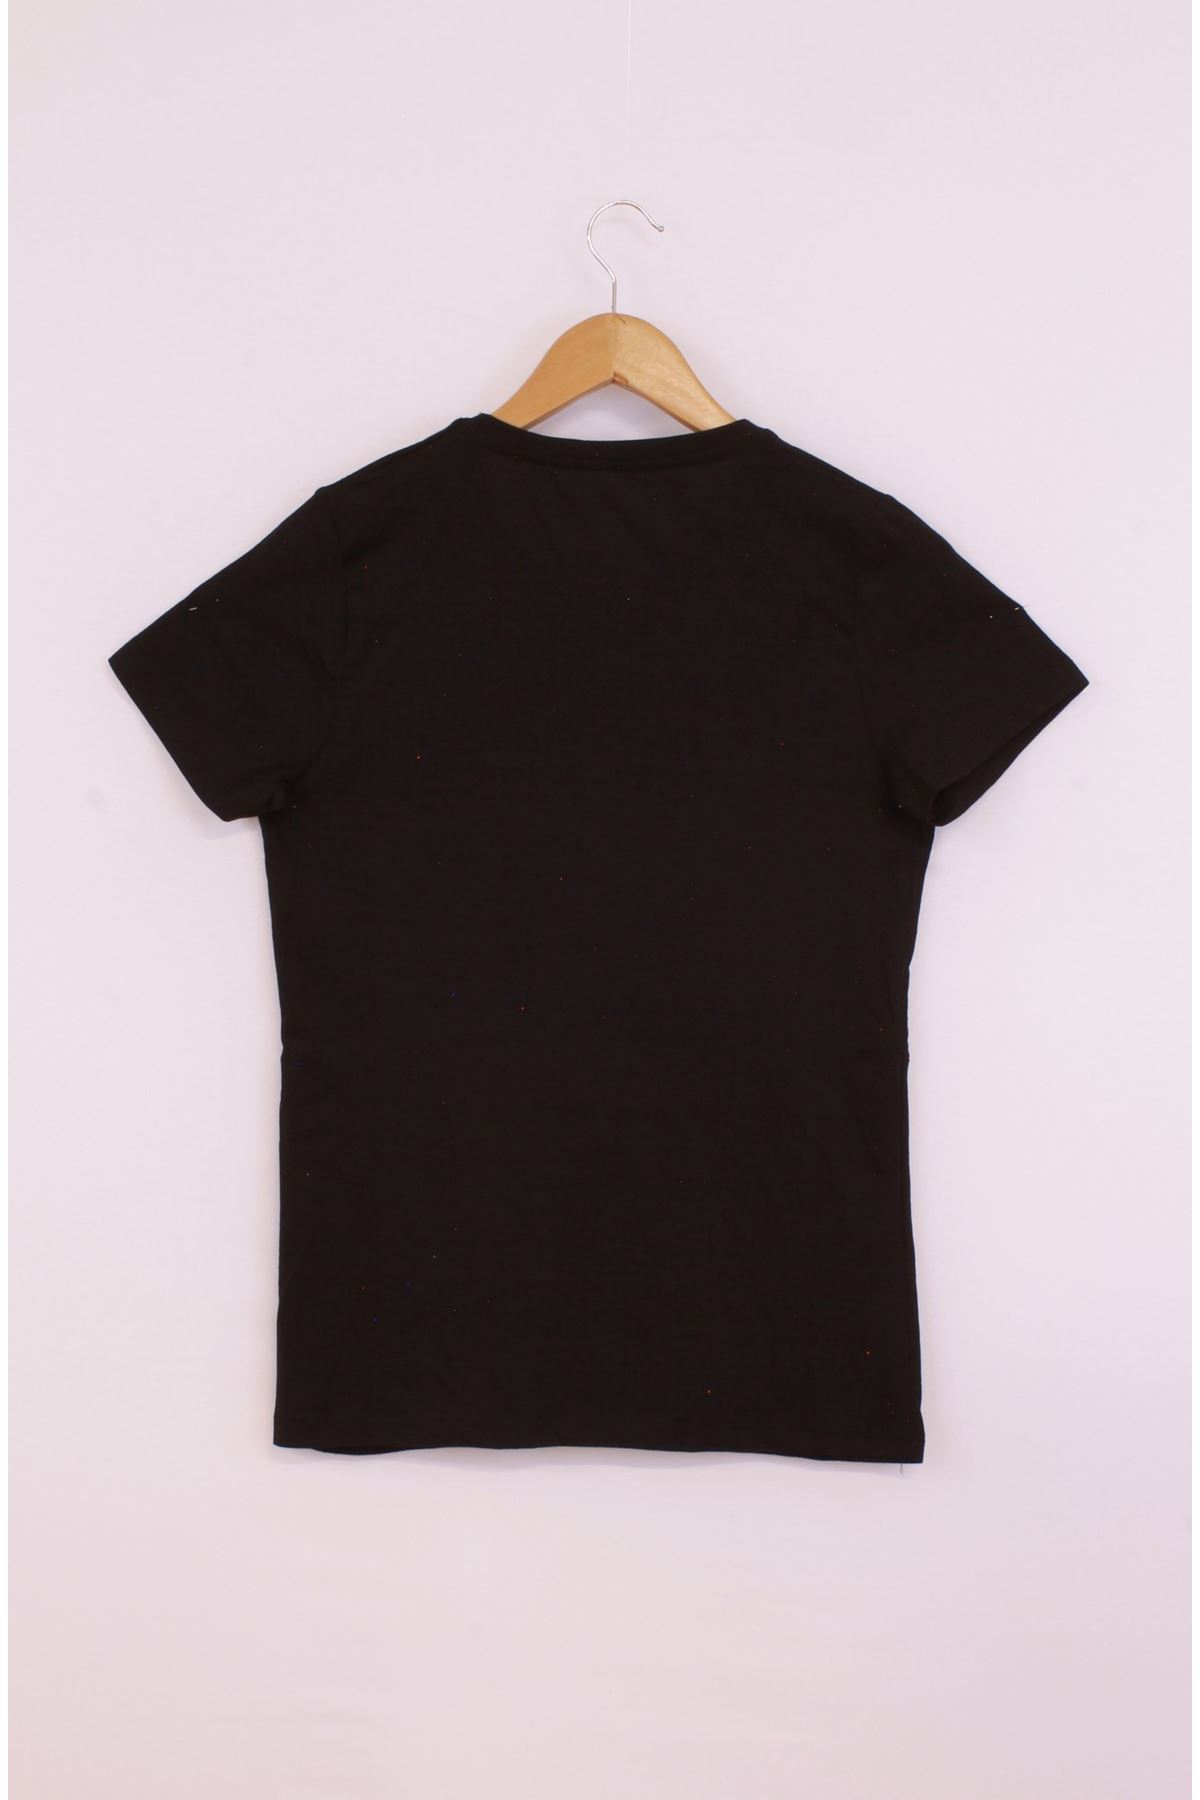 Giyinsen Kadın Siyah Tişört - 23YL71595015